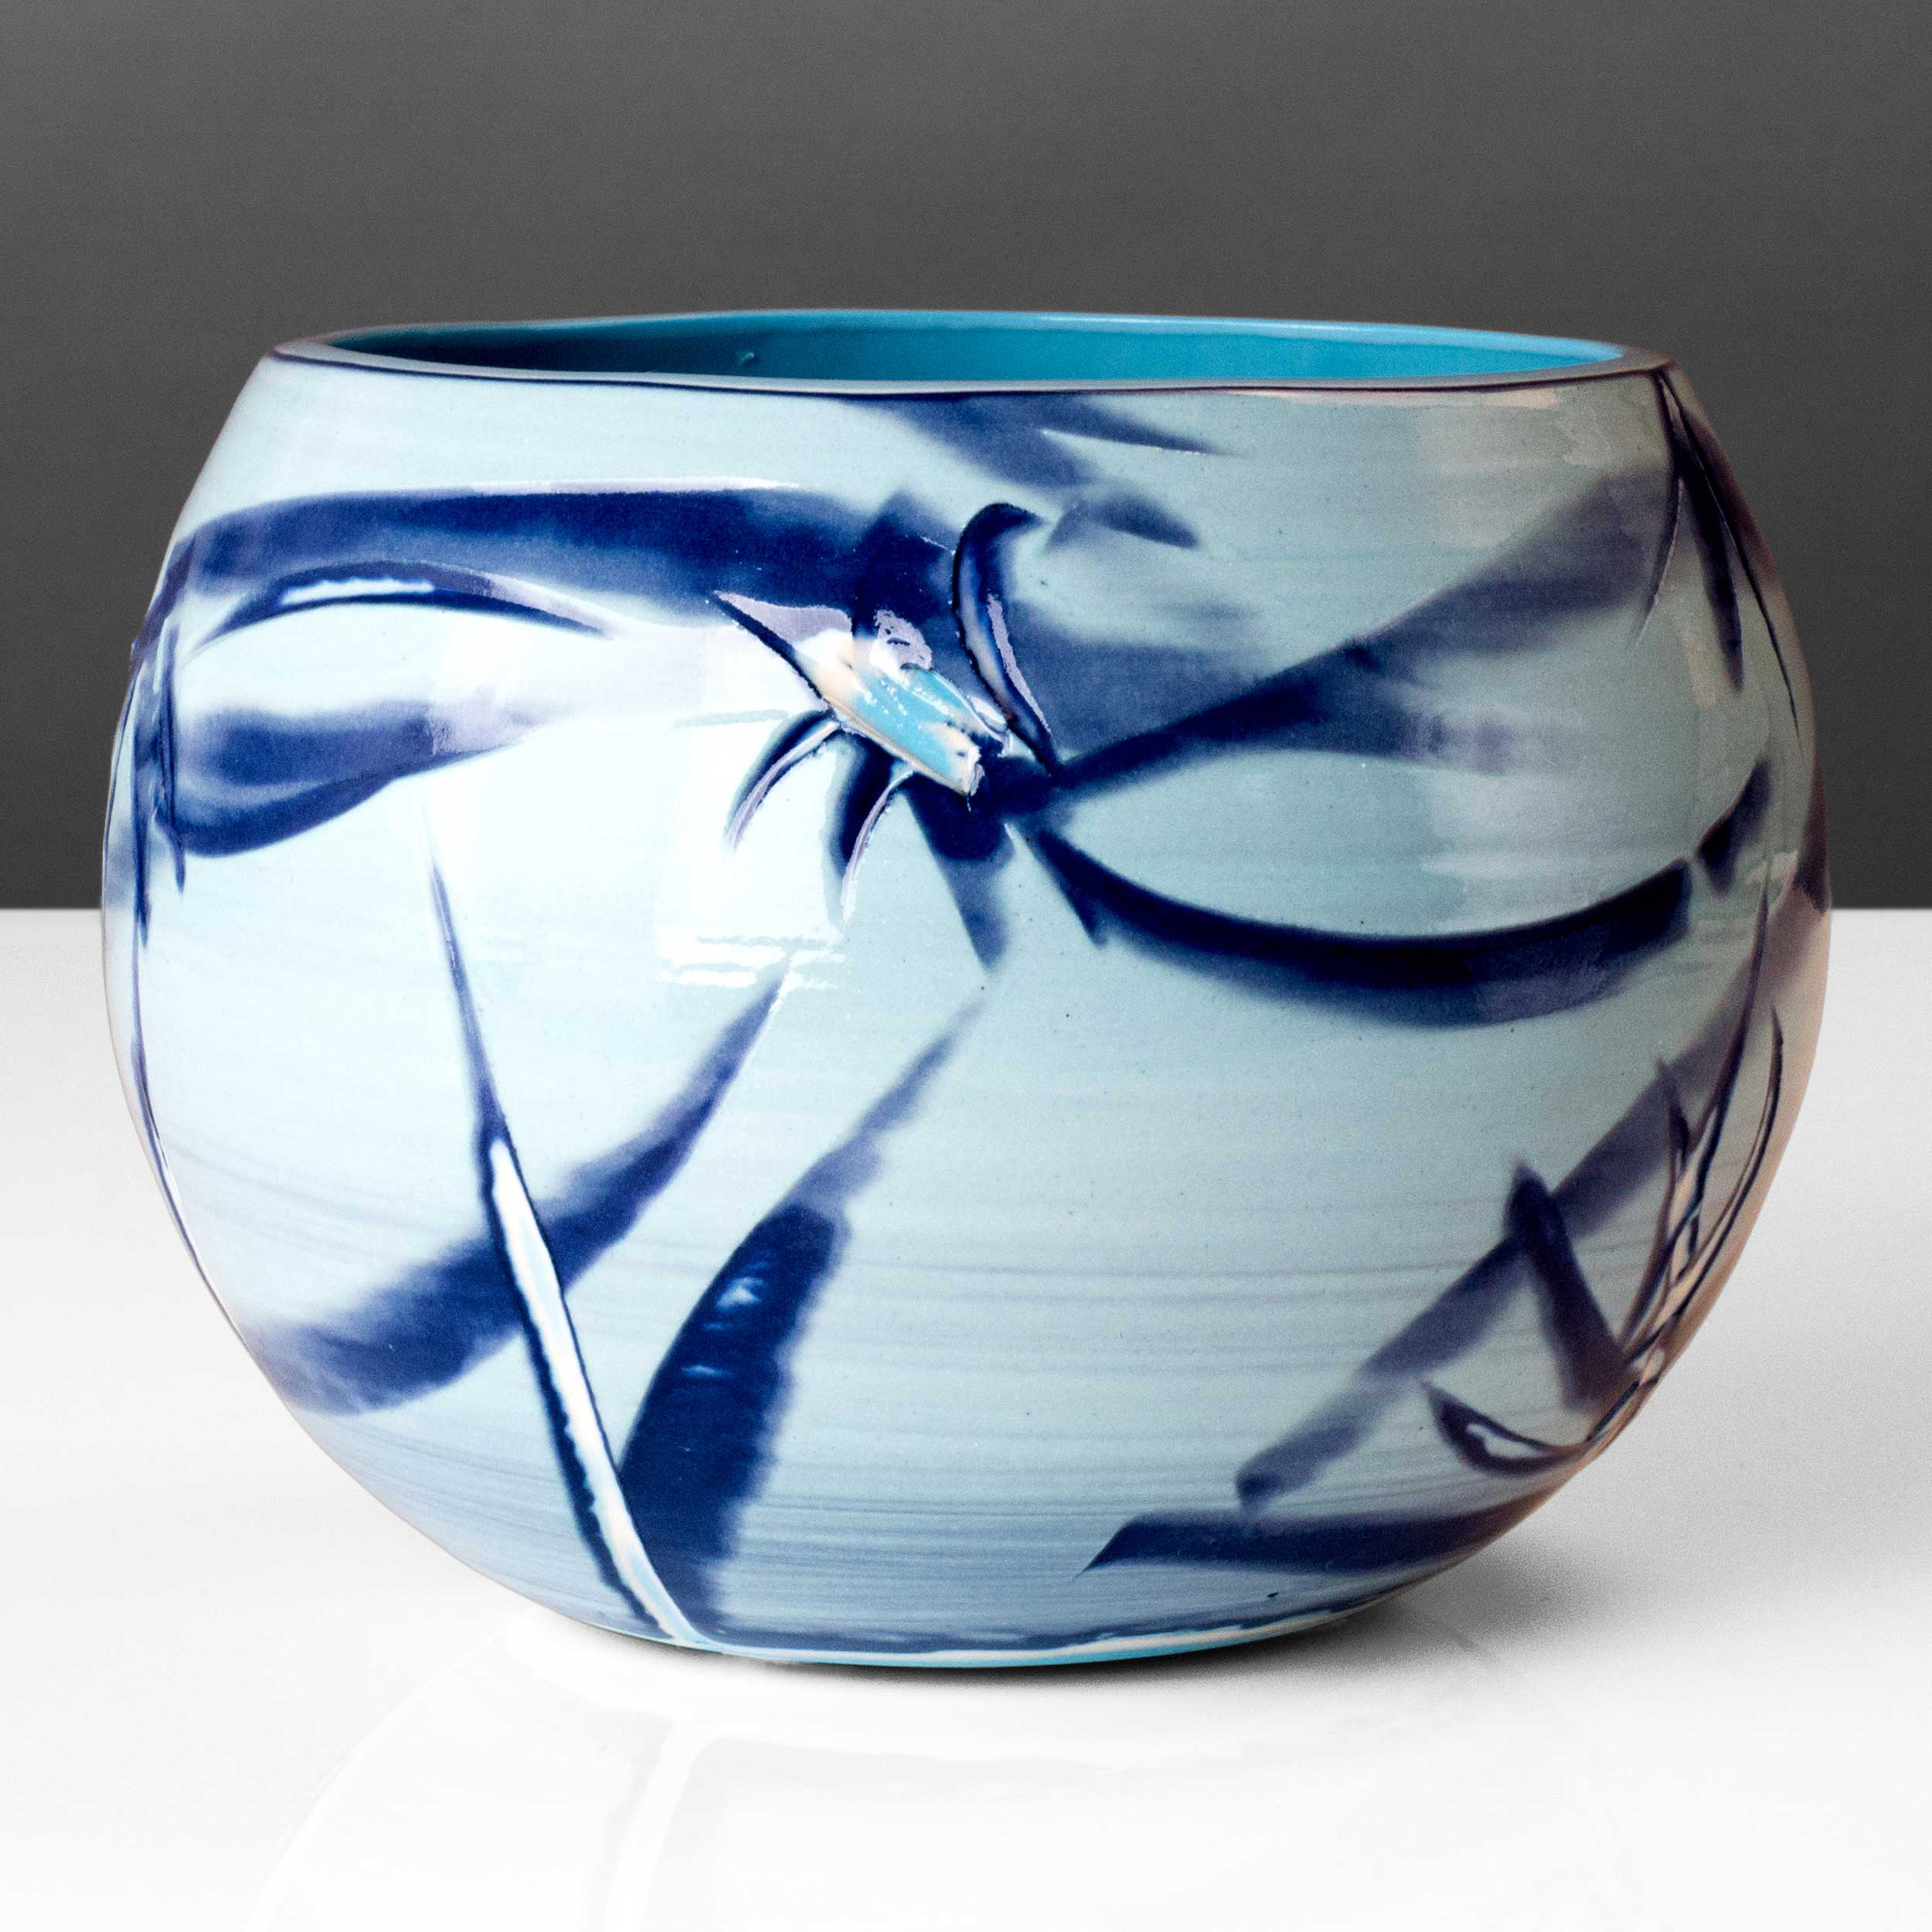  Blue Reef Series Spherical Bowl Vase by Rowena Gilbert